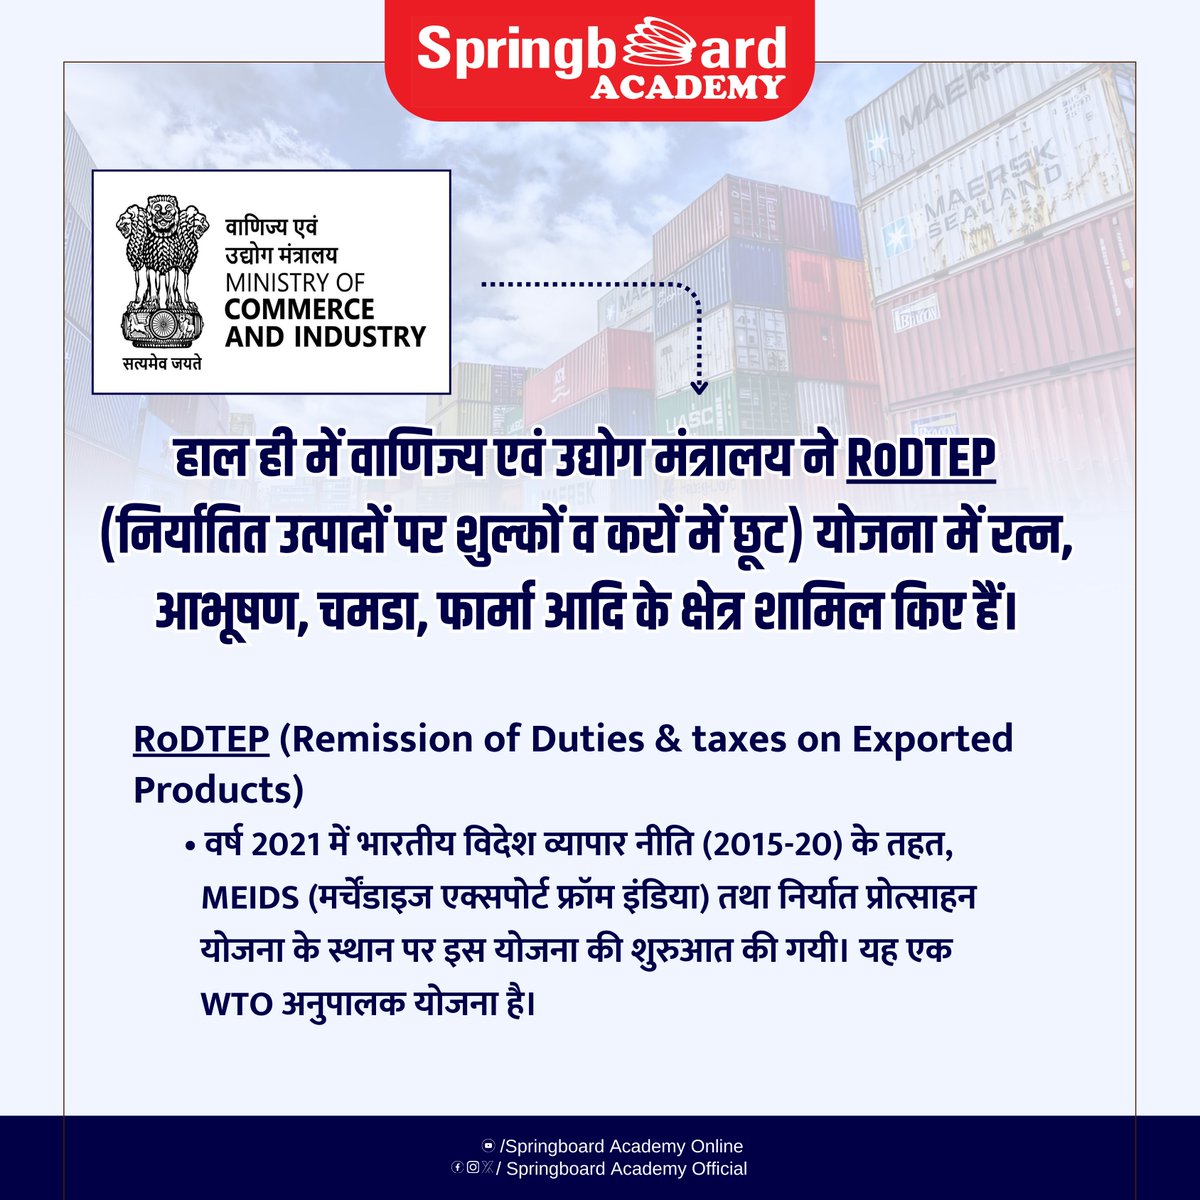 हाल ही में वाणिज्य एवं उद्योग मंत्रालय ने RoDTEP (निर्यातित उत्पादों पर शुल्कों व करों में छूट) योजना में रत्न, आभूषण, चमडा, फार्मा आदि के क्षेत्र शामिल किए हैं।

RoDTEP (Remission of Duties & taxes on Exported Products)

✅️ वर्ष 2021 में भारतीय विदेश व्यापार नीति (2015-20) के